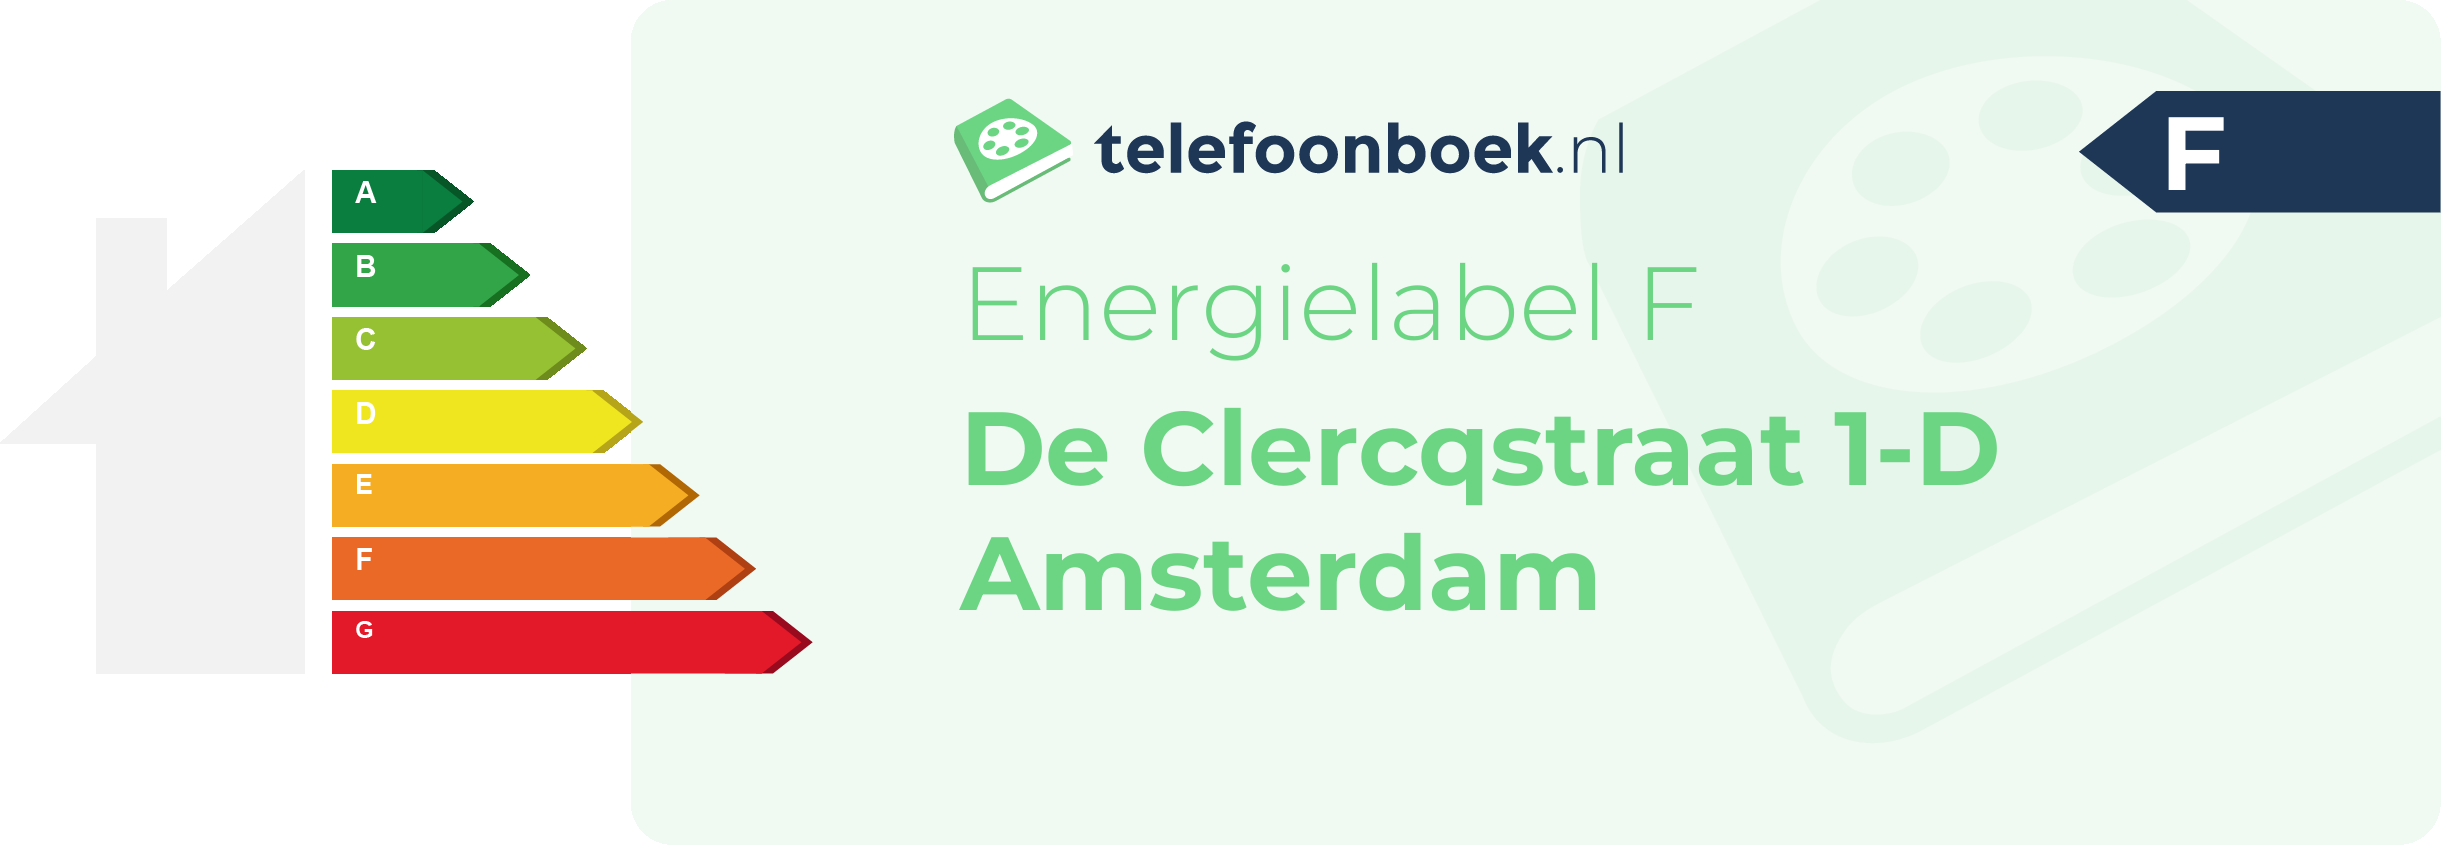 Energielabel De Clercqstraat 1-D Amsterdam